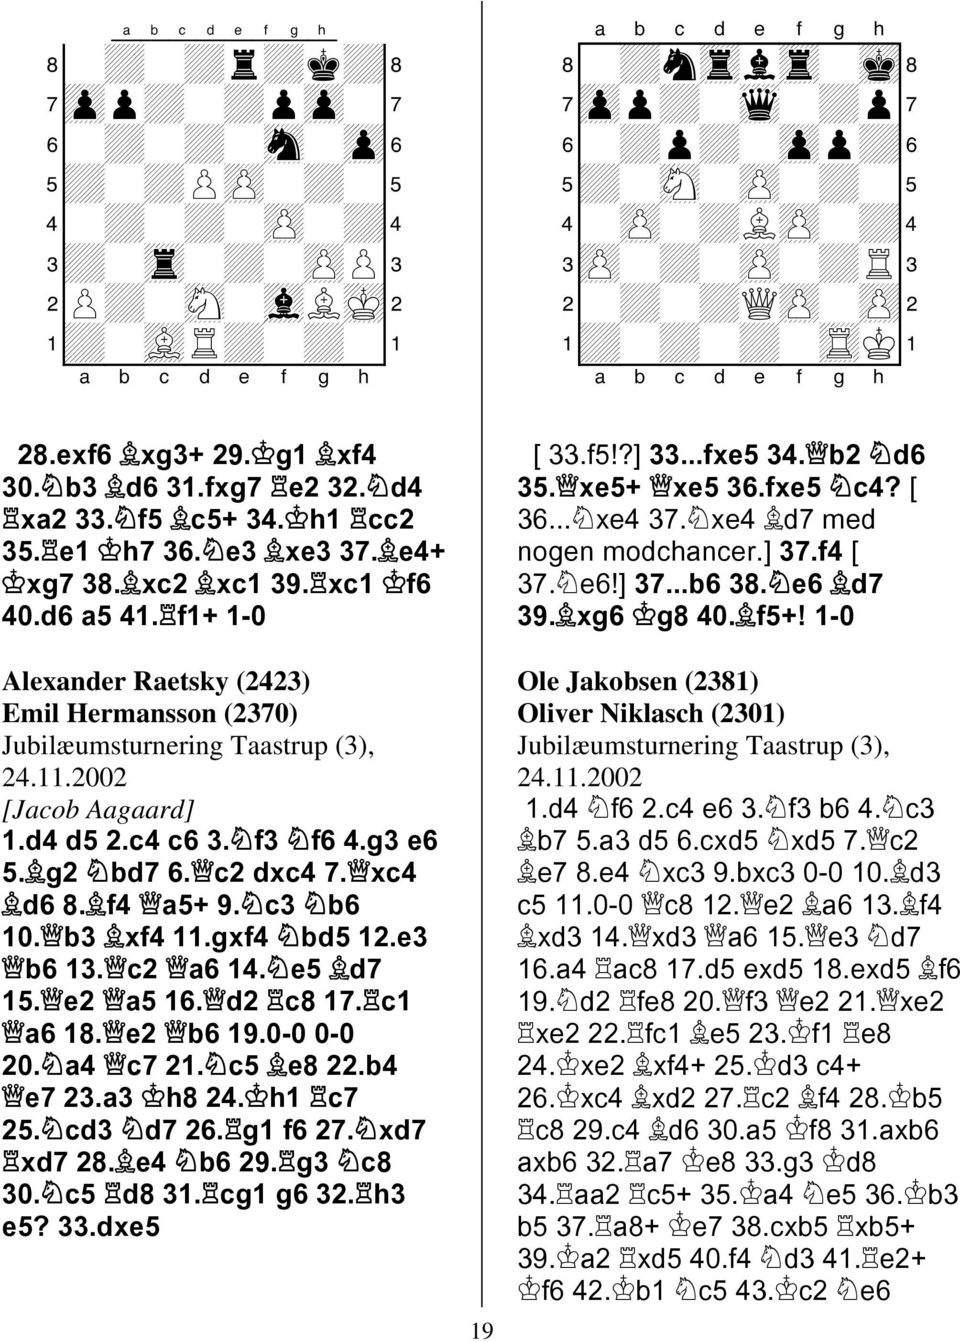 c2 dxc4 7. xc4 d6 8. f4 a5+ 9. c3 b6. b3 xf4.gxf4 bd5 2.e3 b6 3. c2 a6 4. e5 d7 5. e2 a5 6. d2 c8 7. c a6 8. e2 b6 9.- - 2. a4 c7 2. c5 e8 22.b4 e7 23.a3 h8 24. h c7 25. cd3 d7 26. g f6 27.